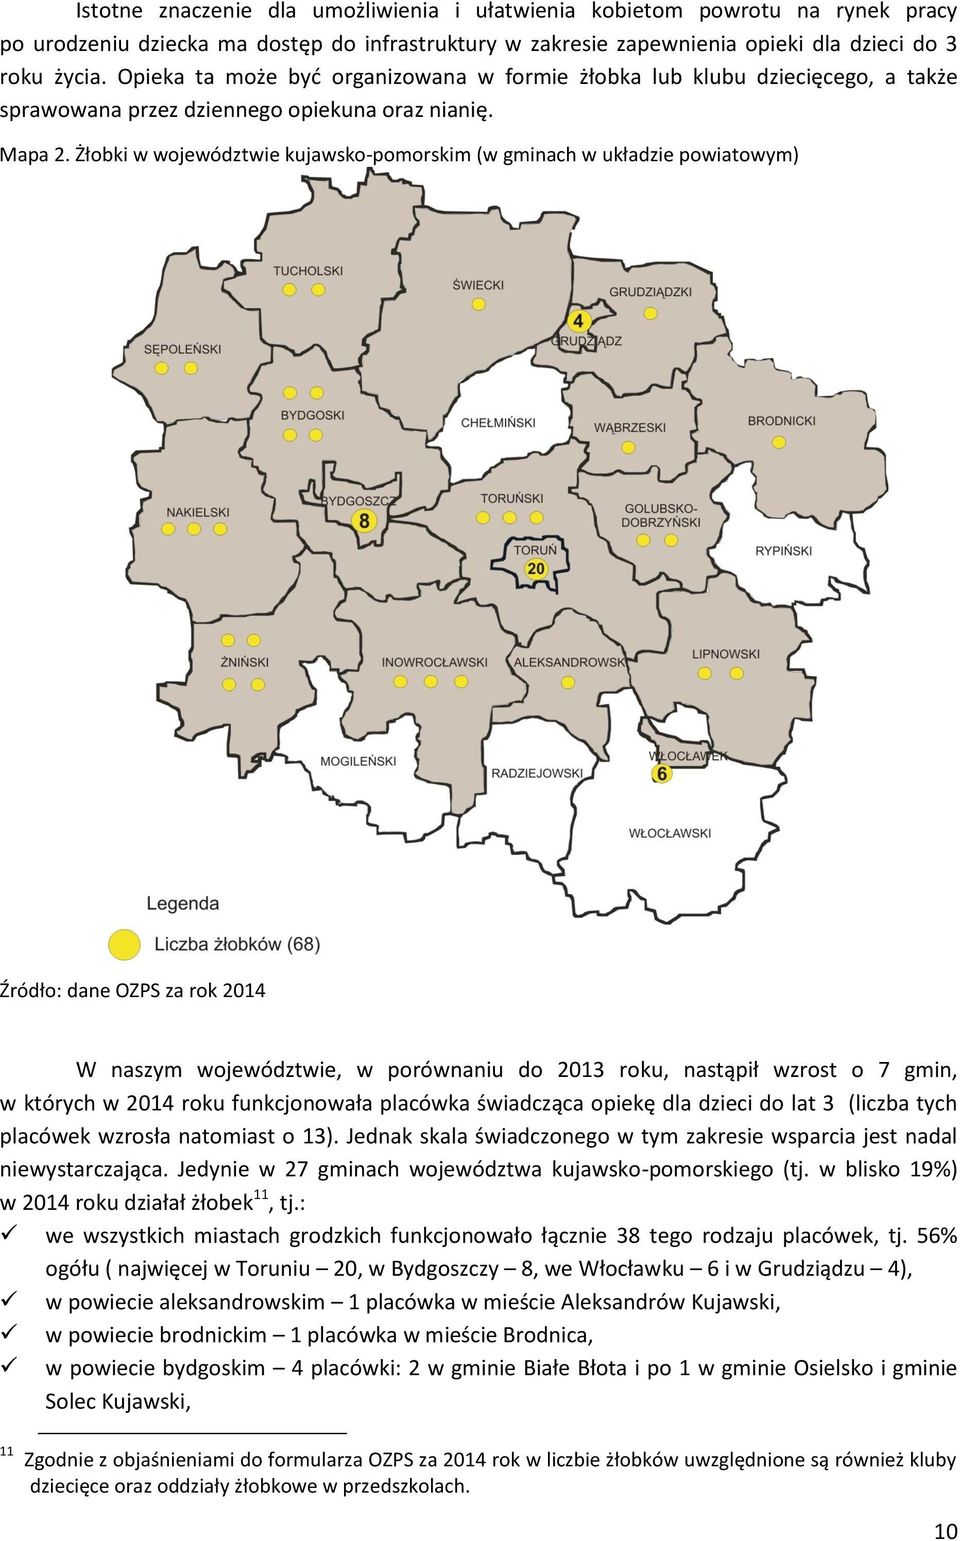 Żłobki w województwie kujawsko-pomorskim (w gminach w układzie powiatowym) Źródło: dane OZPS za rok 2014 W naszym województwie, w porównaniu do 2013 roku, nastąpił wzrost o 7 gmin, w których w 2014